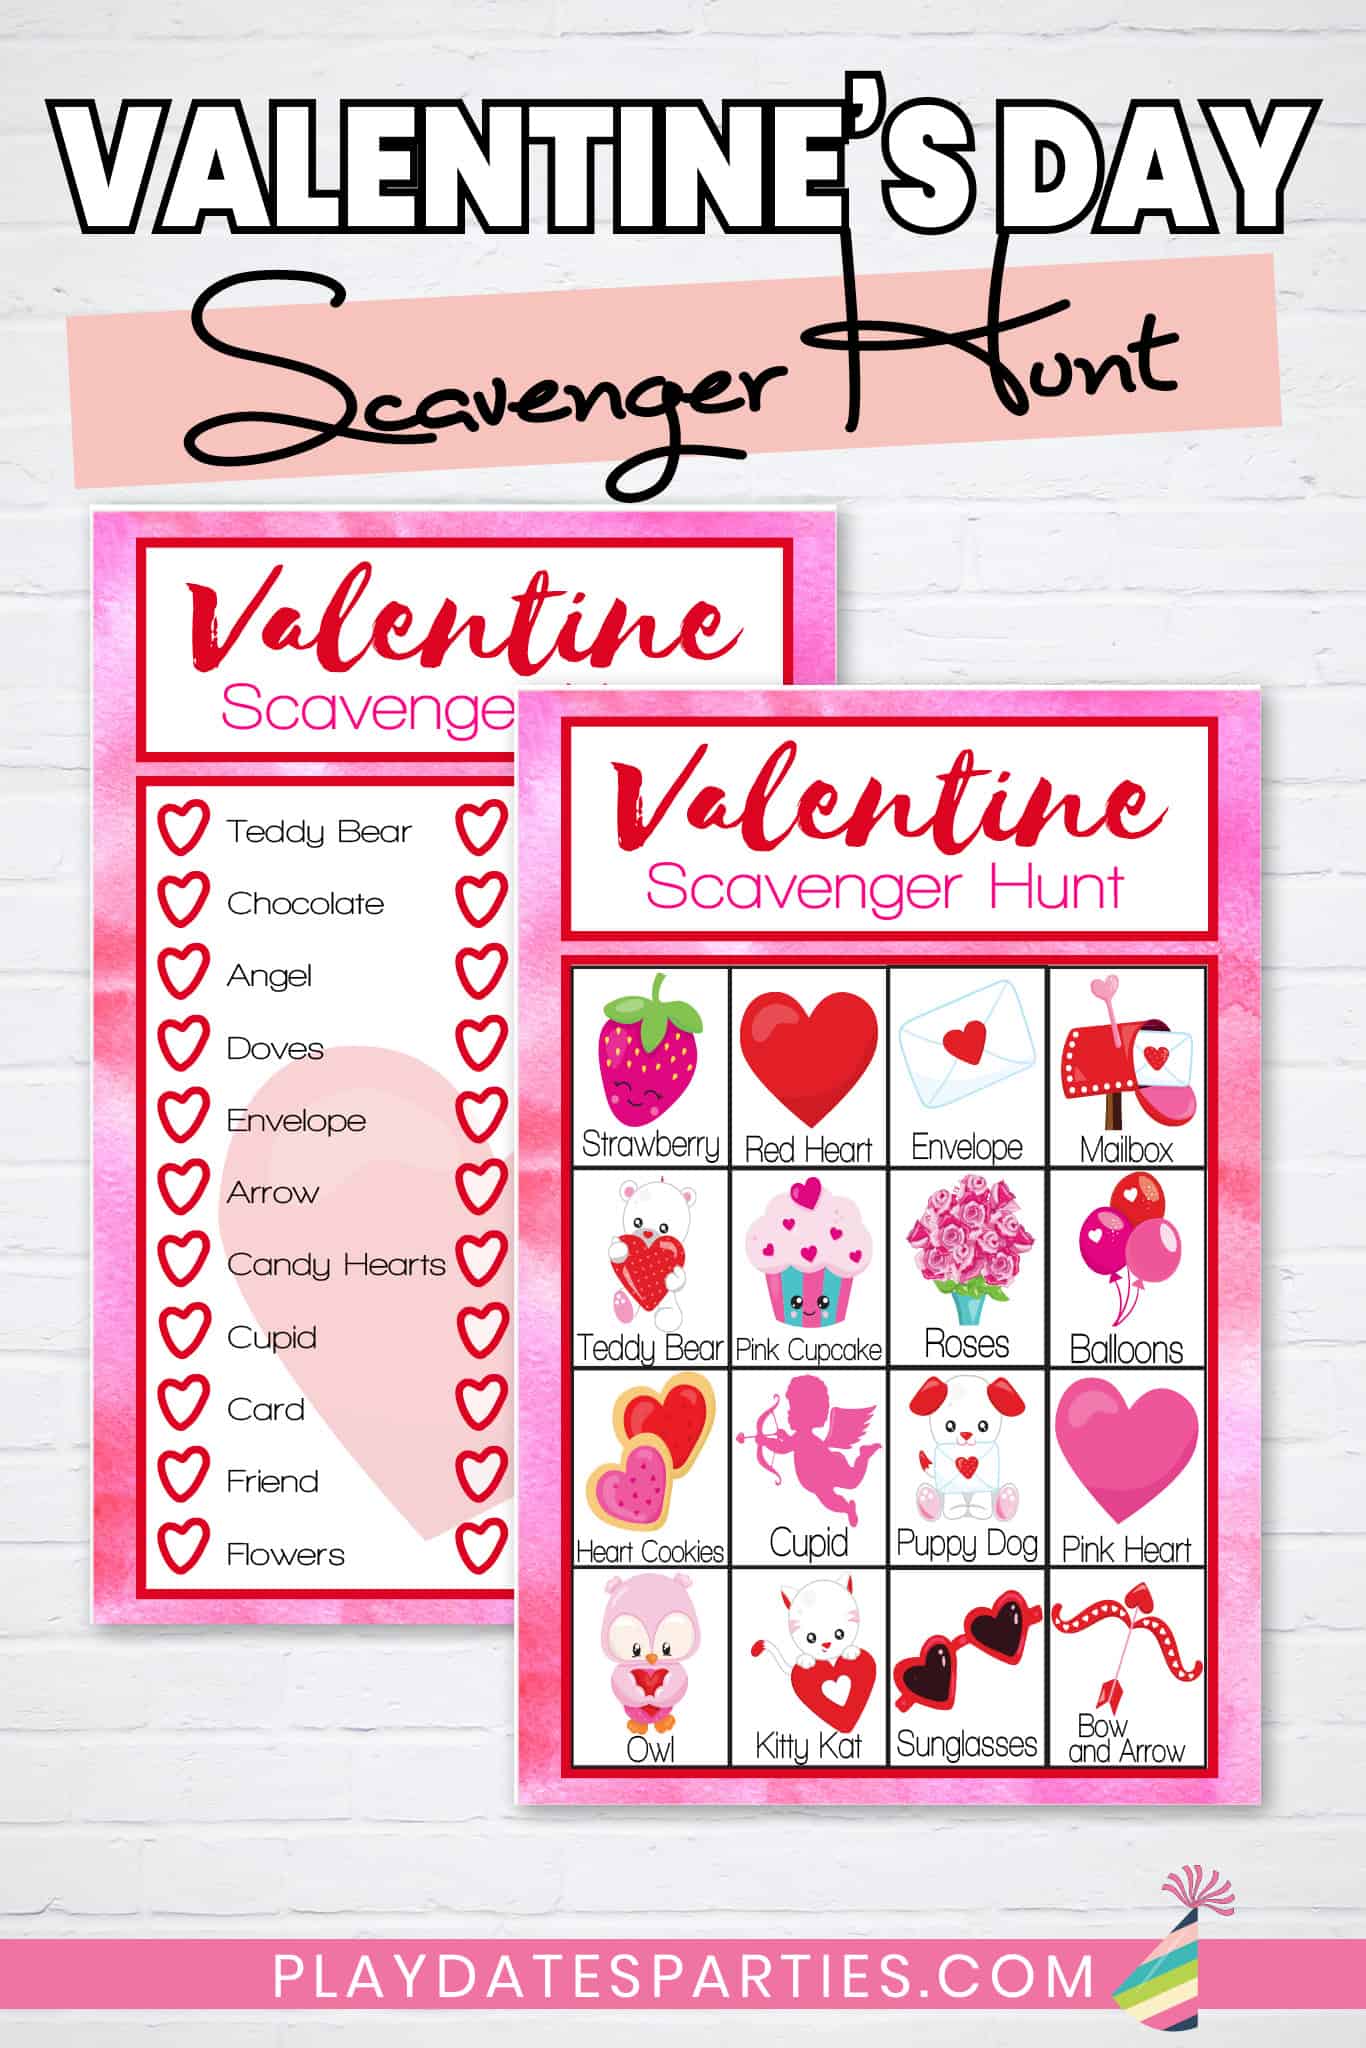 Valentine's Day Scavenger Hunt Cards